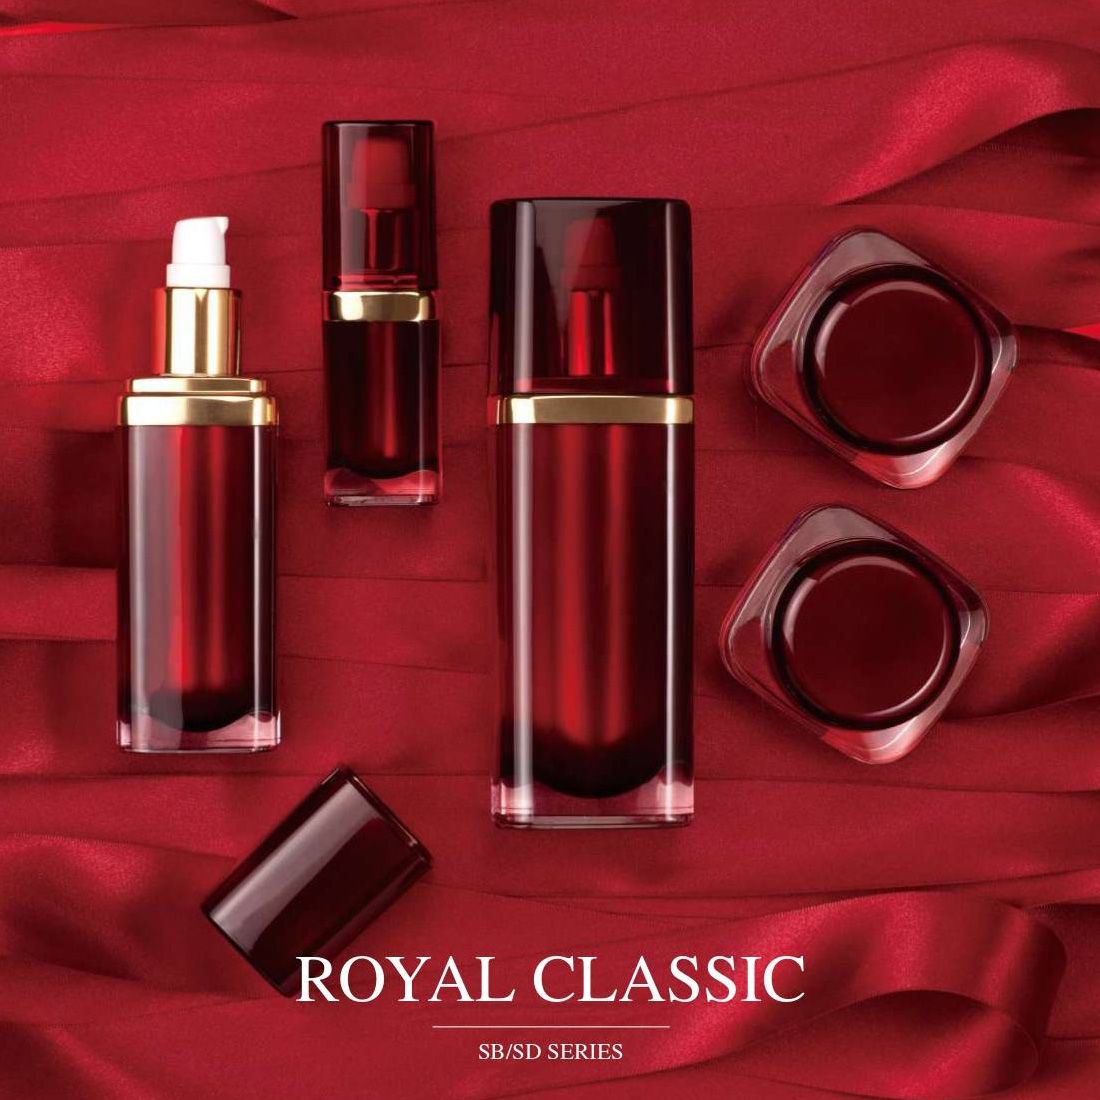 Royal Classics (embalagens acrílicas de luxo para cosméticos e cuidados com a pele) Série SB/SD